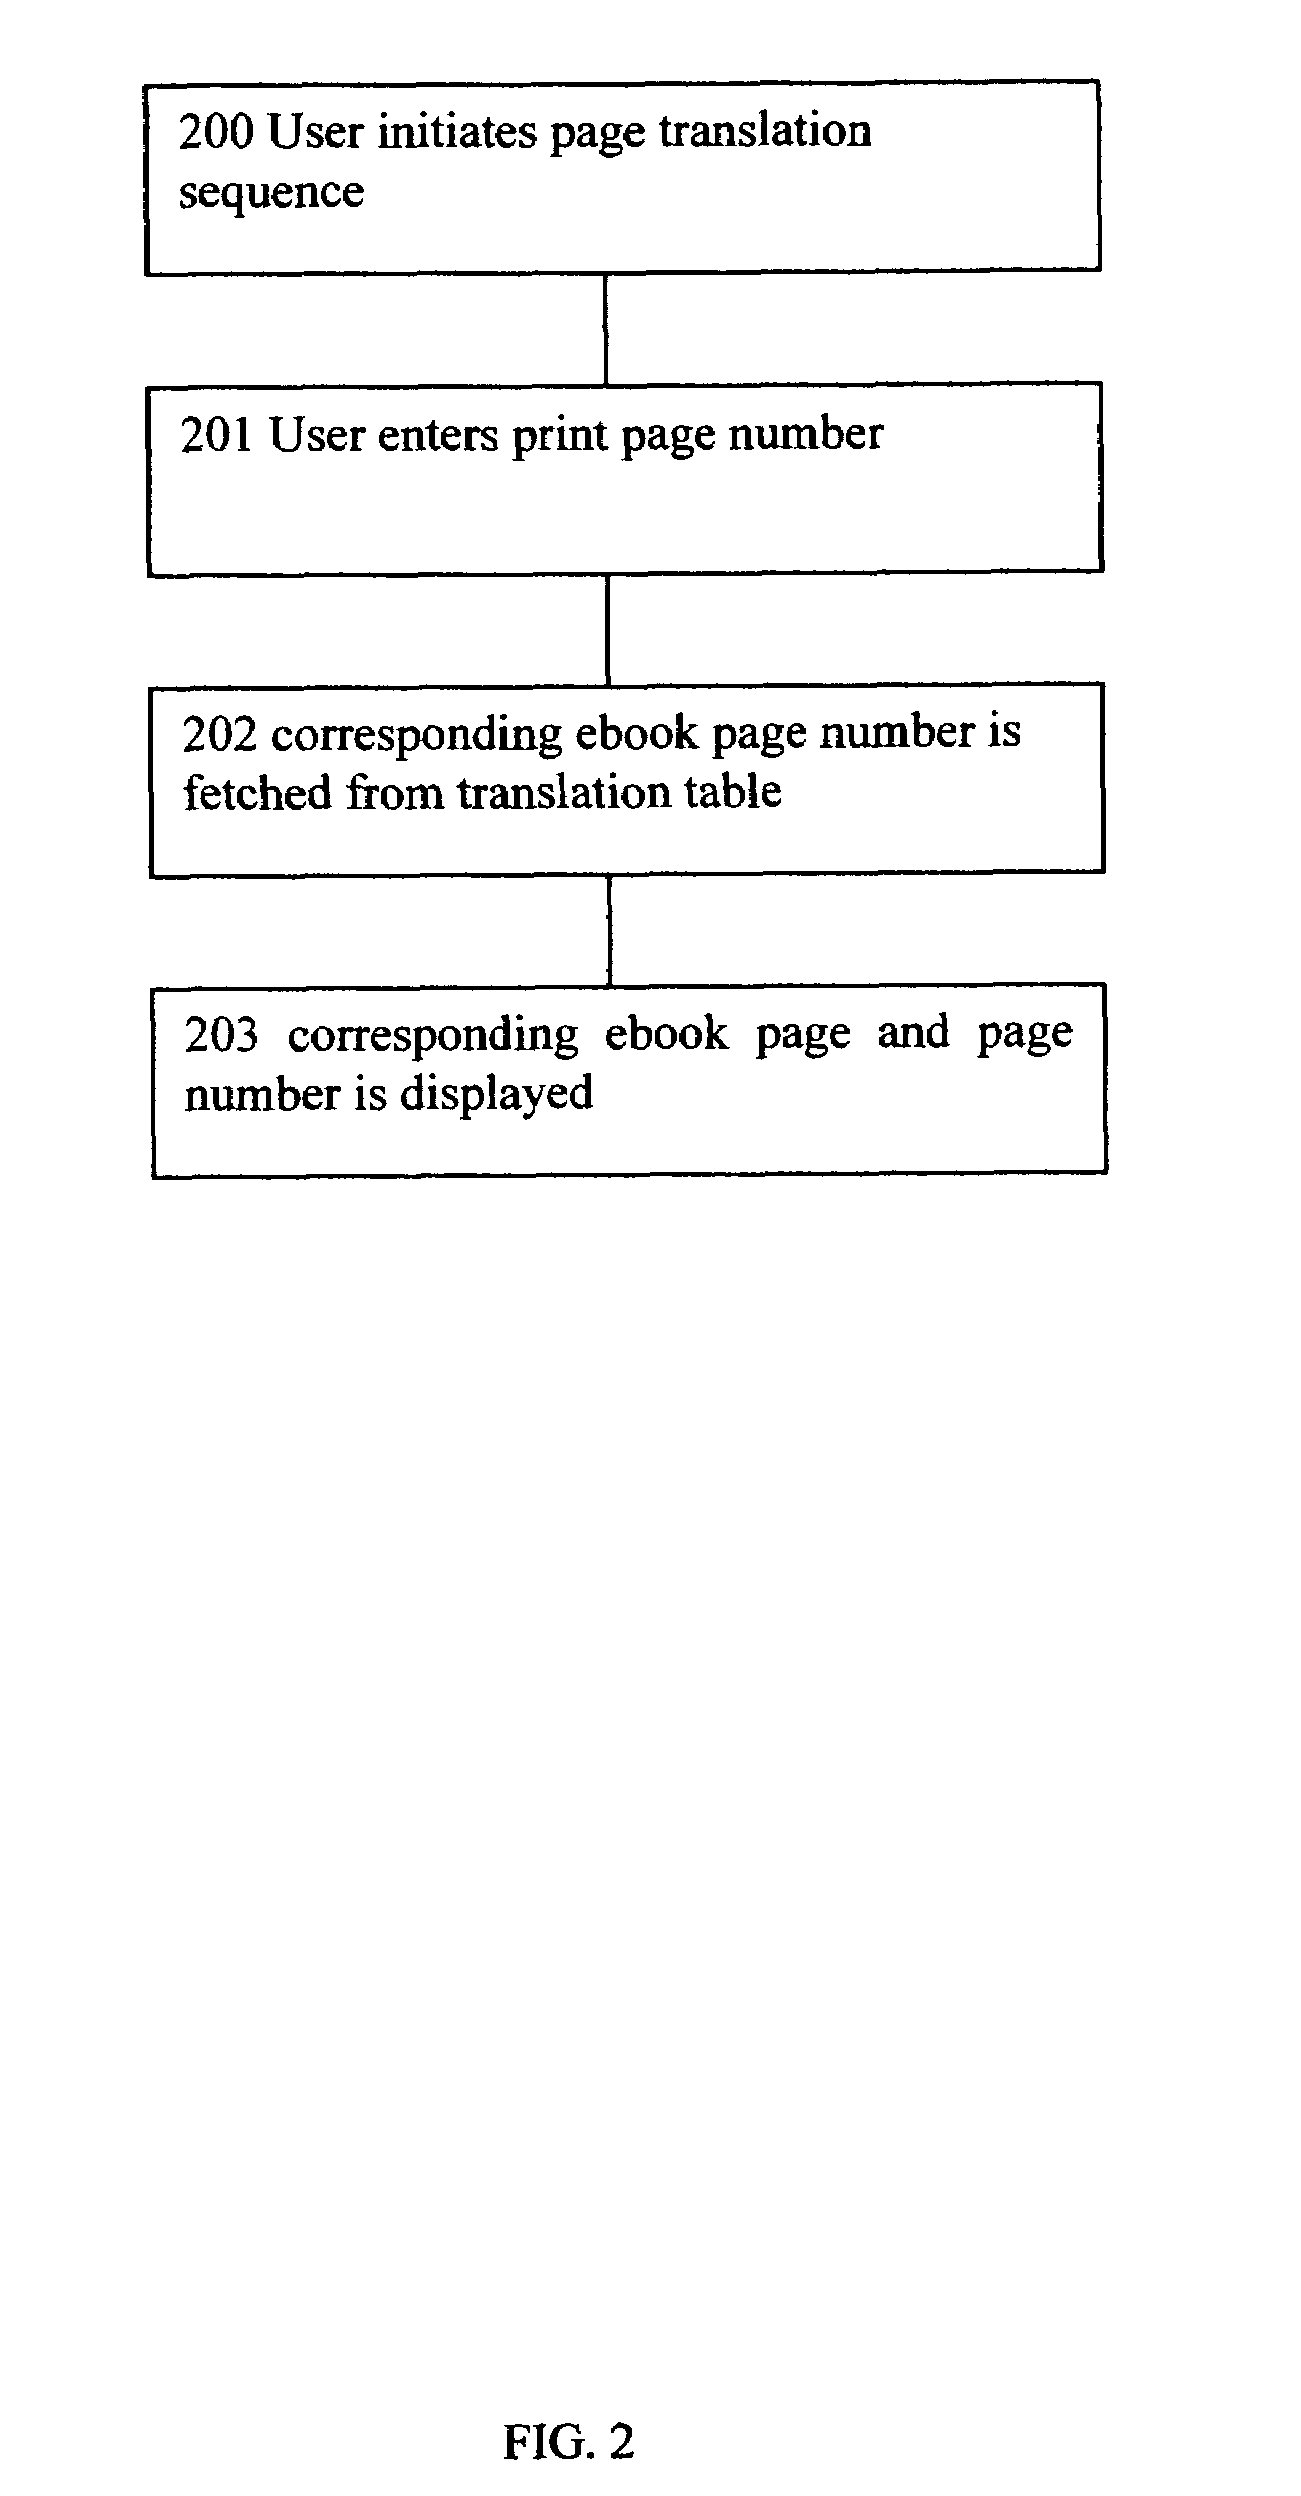 Method for page translation